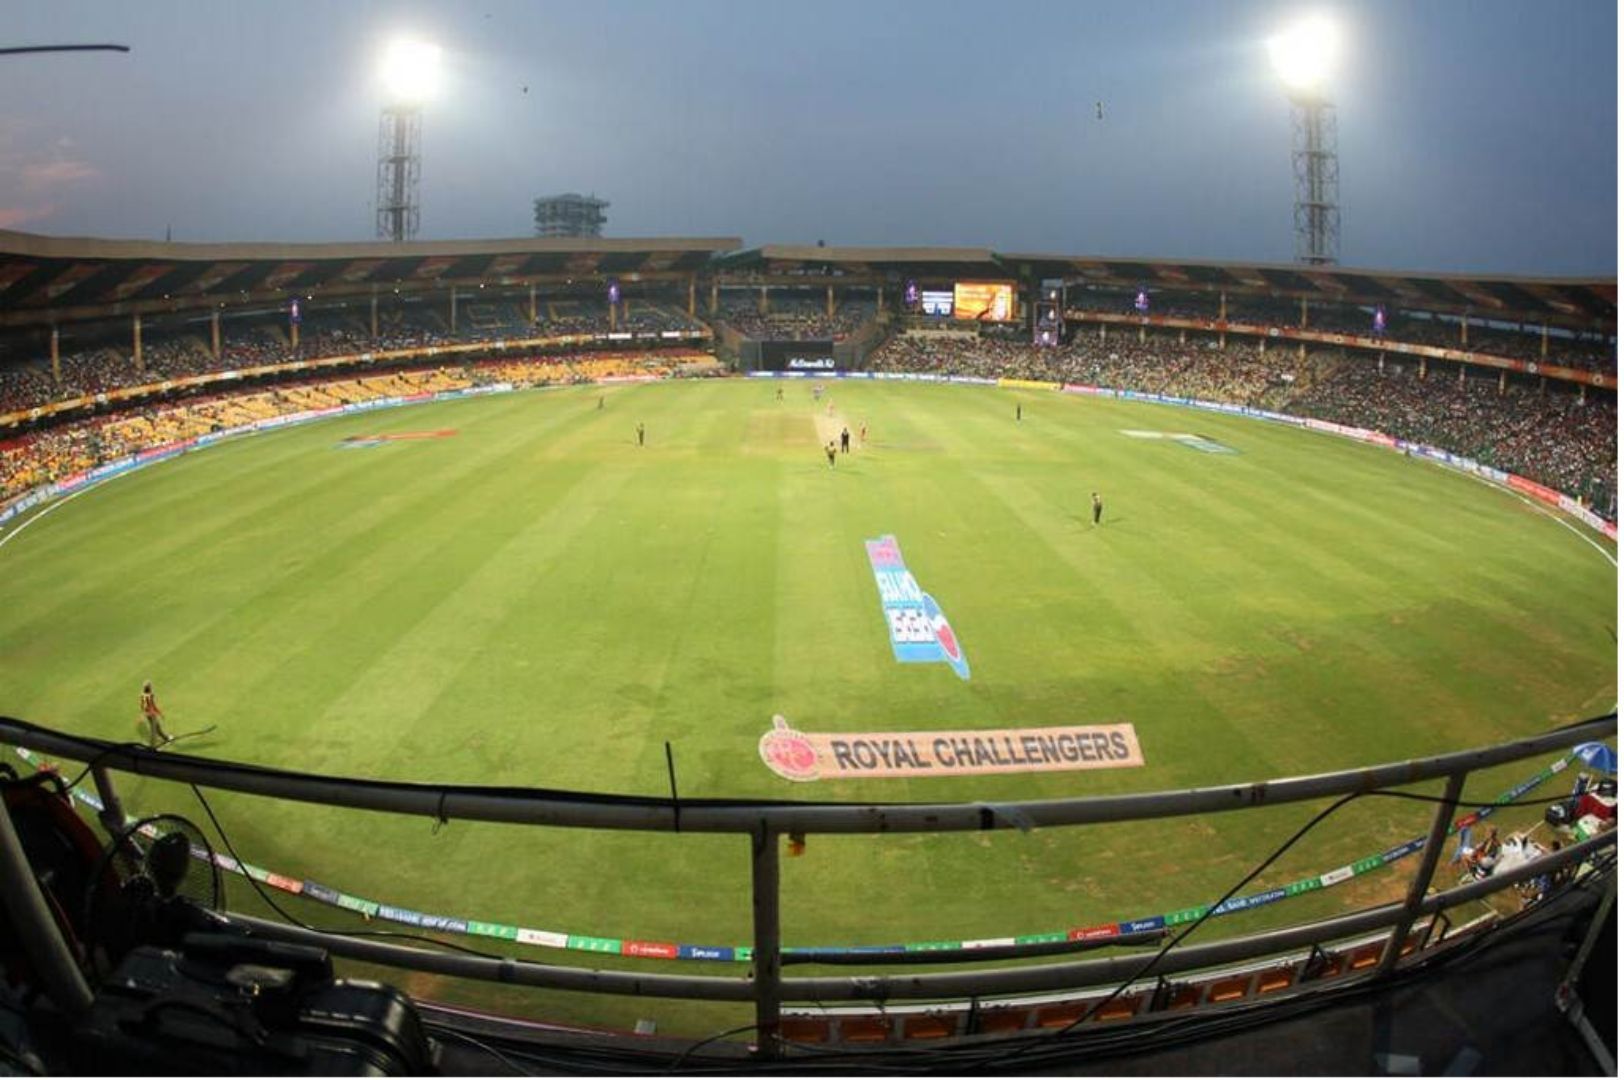 M. Chinnaswamy Stadium in Bengaluru will be hosting the 2nd India vs Sri Lanka Test